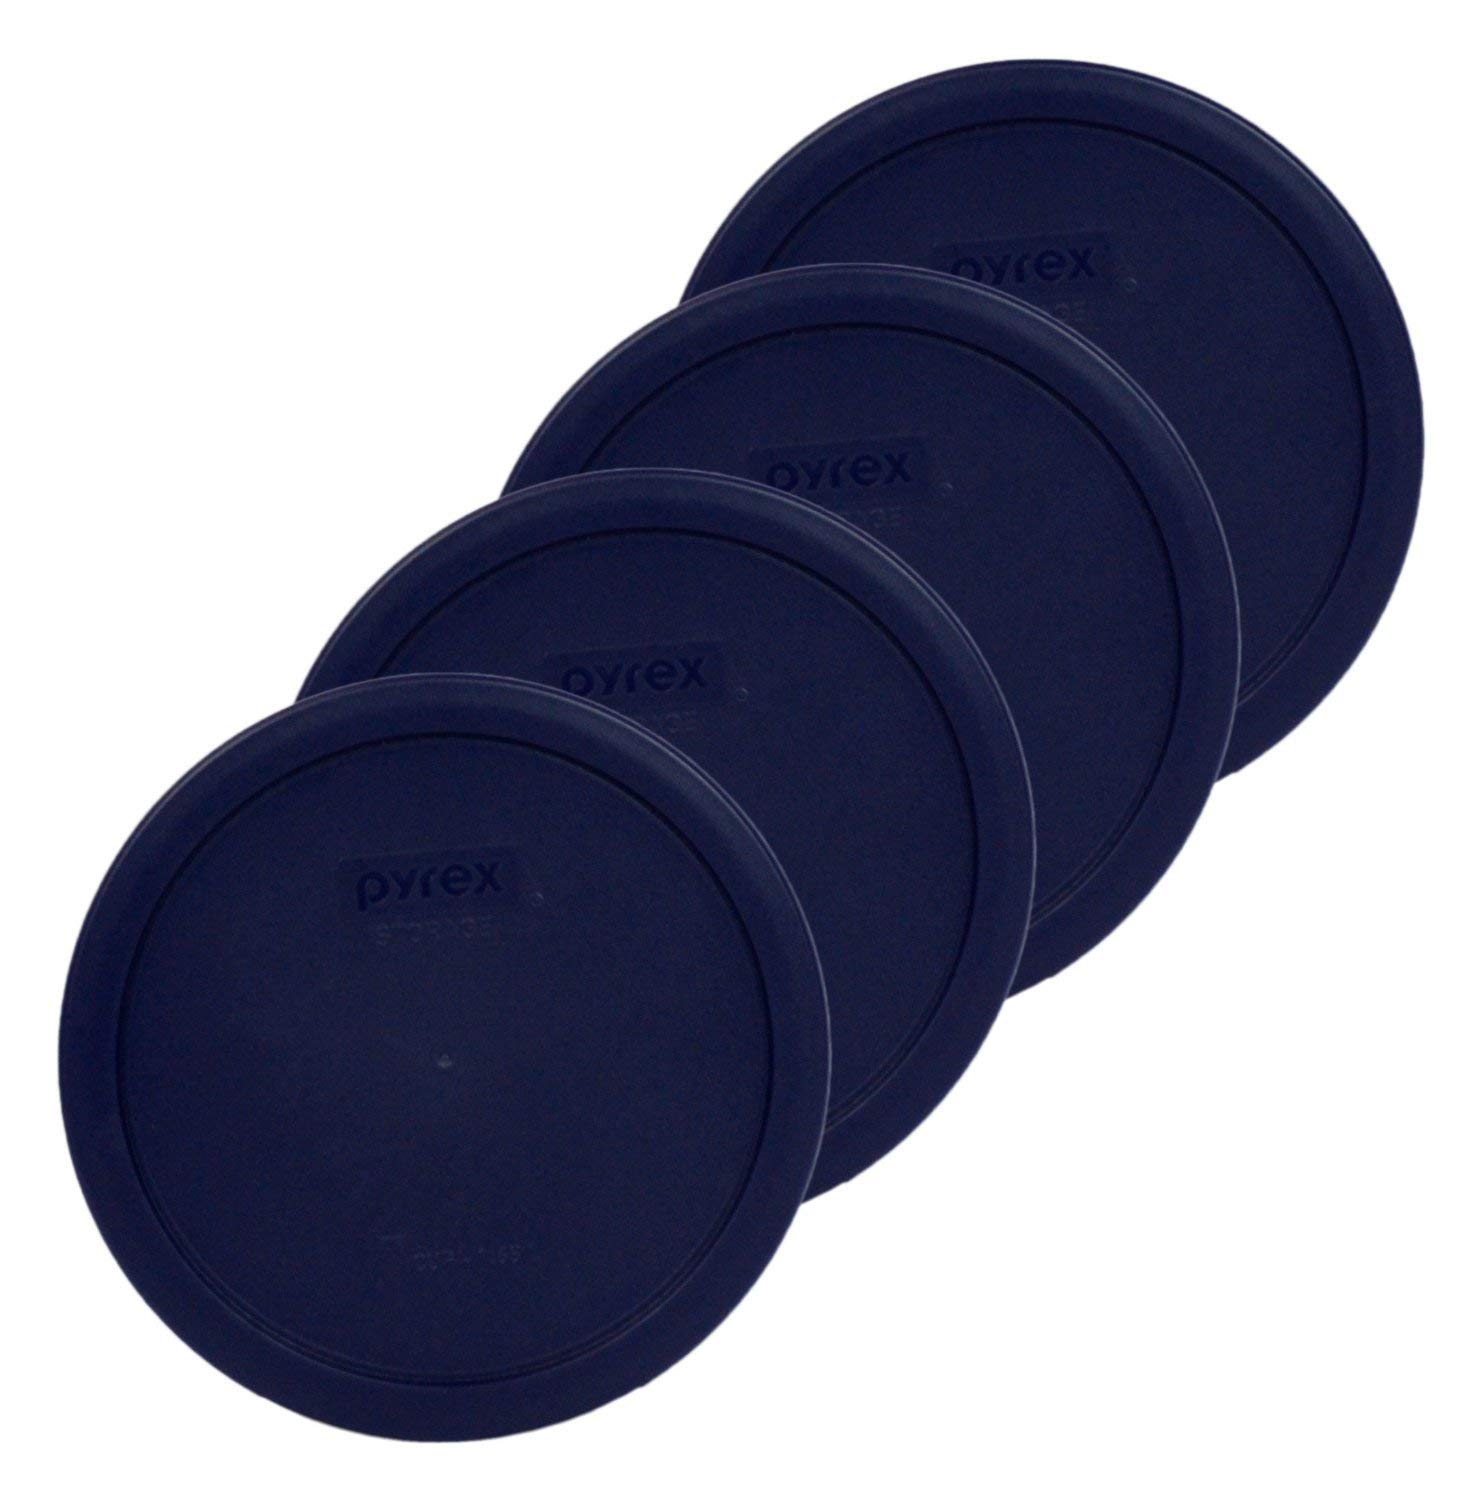 Pyrex Bundle - 4 Items: 7402-Pc 6/7-Cup Blue Plastic Food Storage Lids